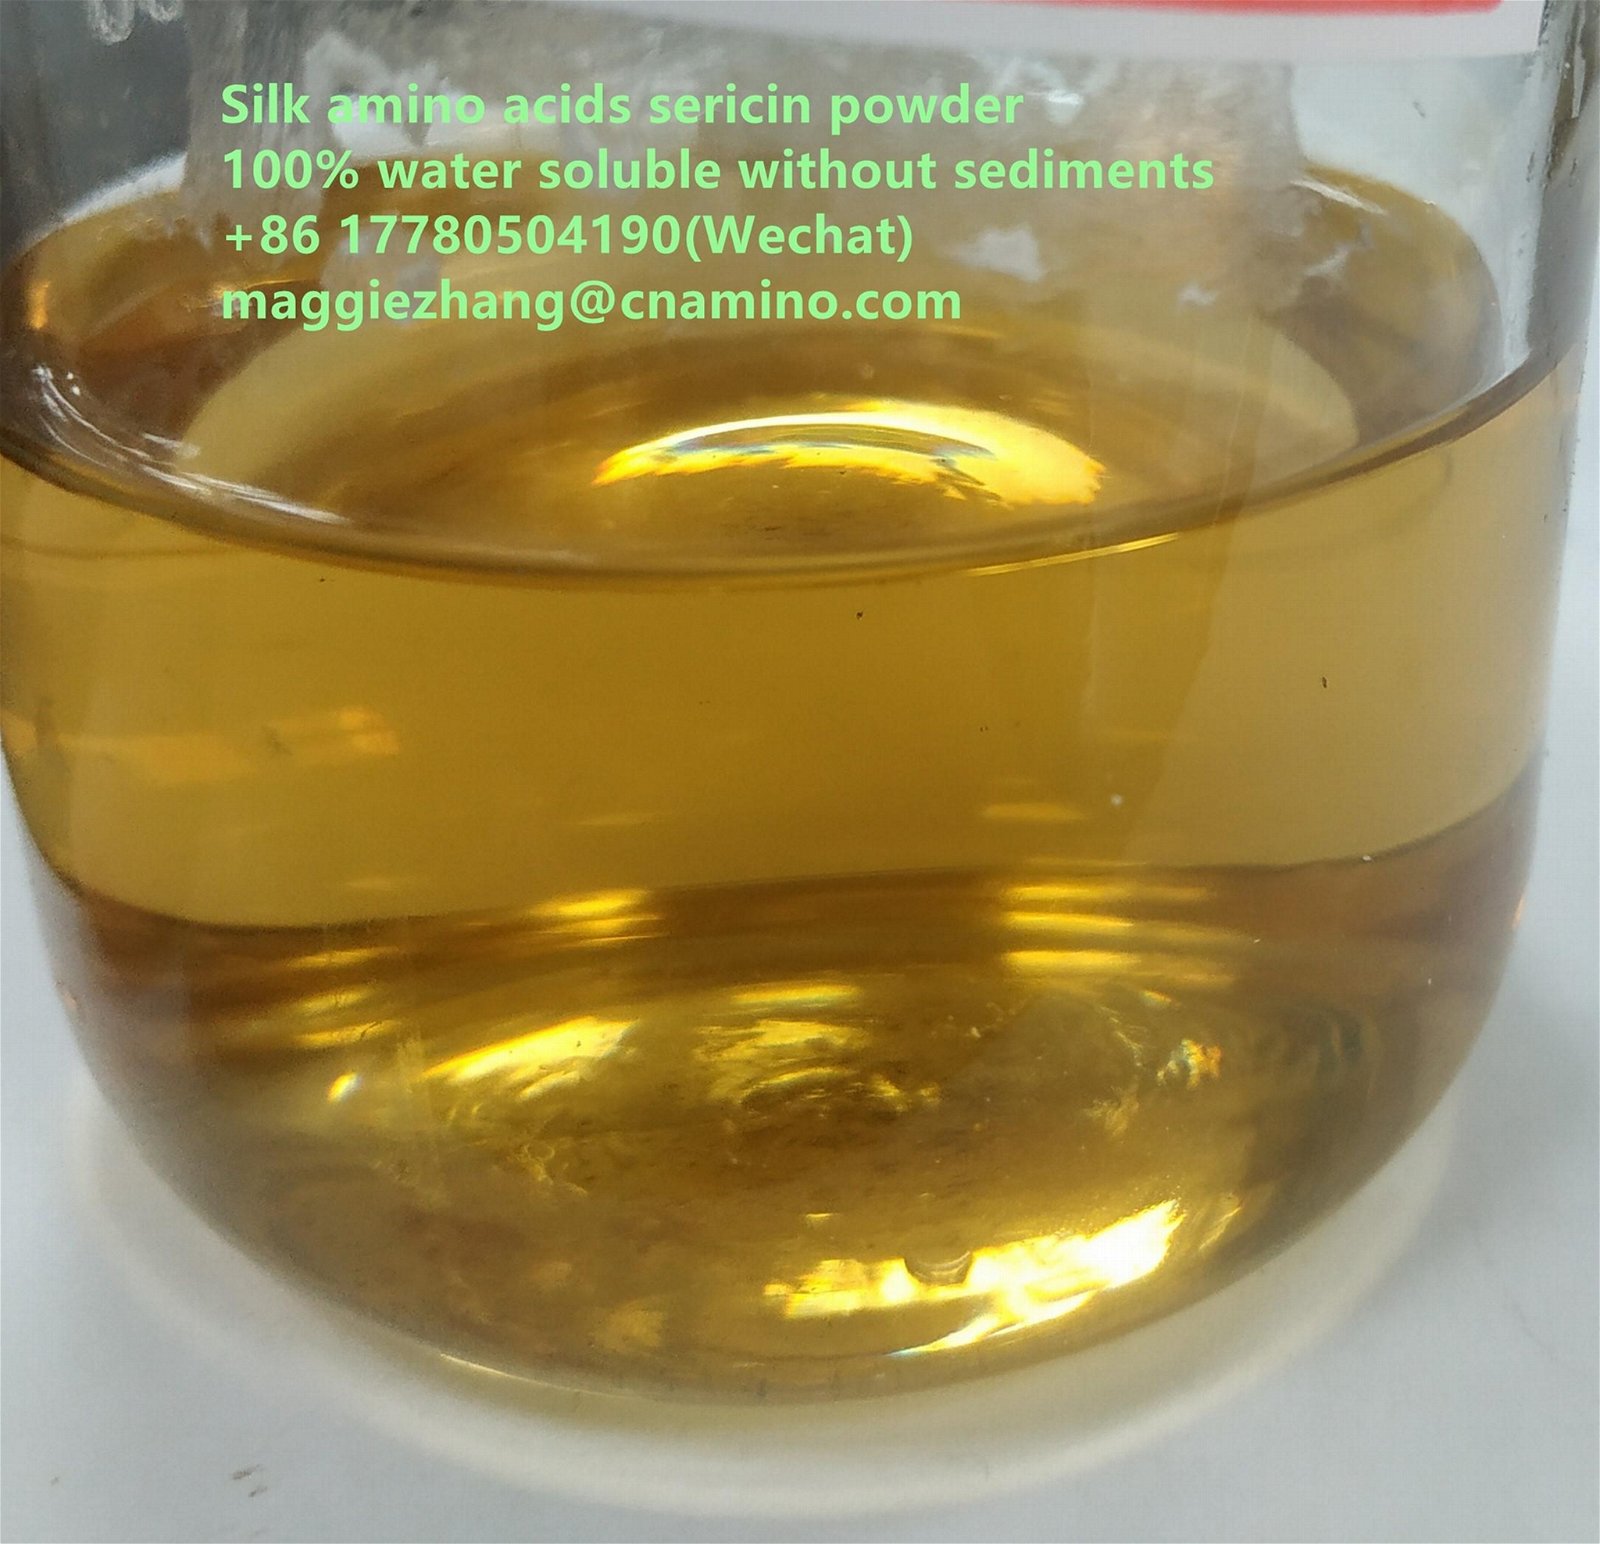 Silk amino acids sericin fibroin  powder in cosmetic grade  2